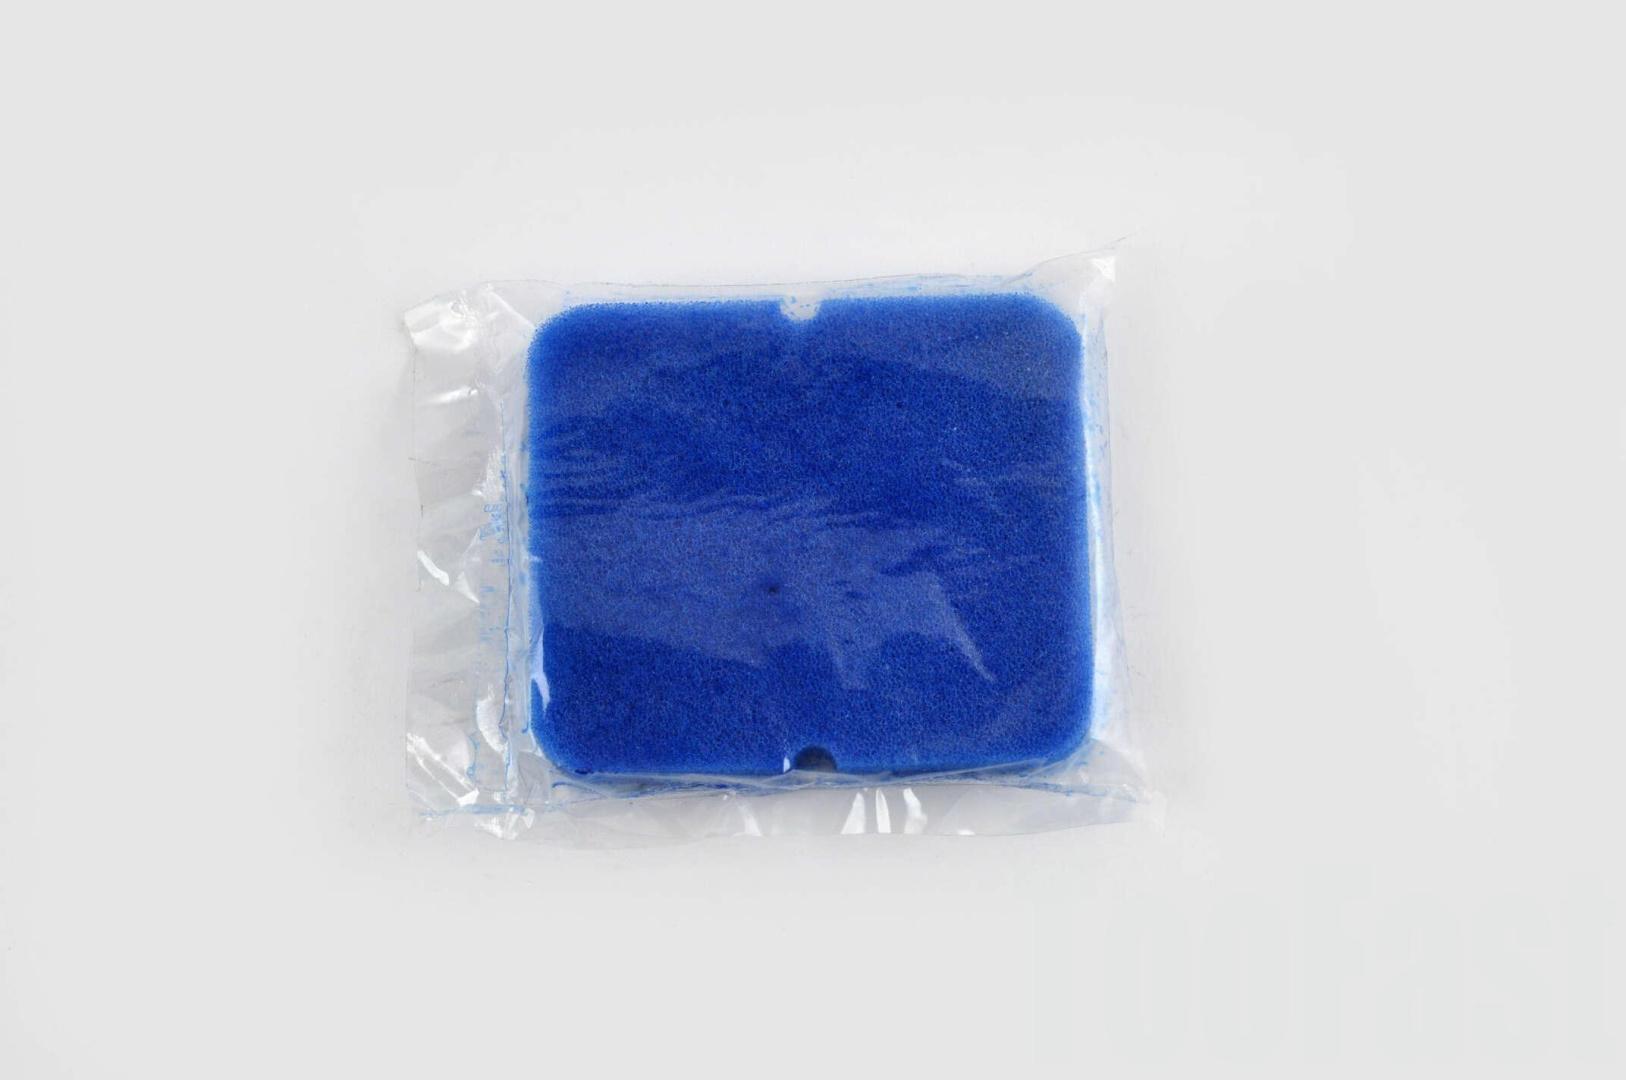 Элемент воздушного фильтра   Delta   (поролон с пропиткой)   (синий)   AS